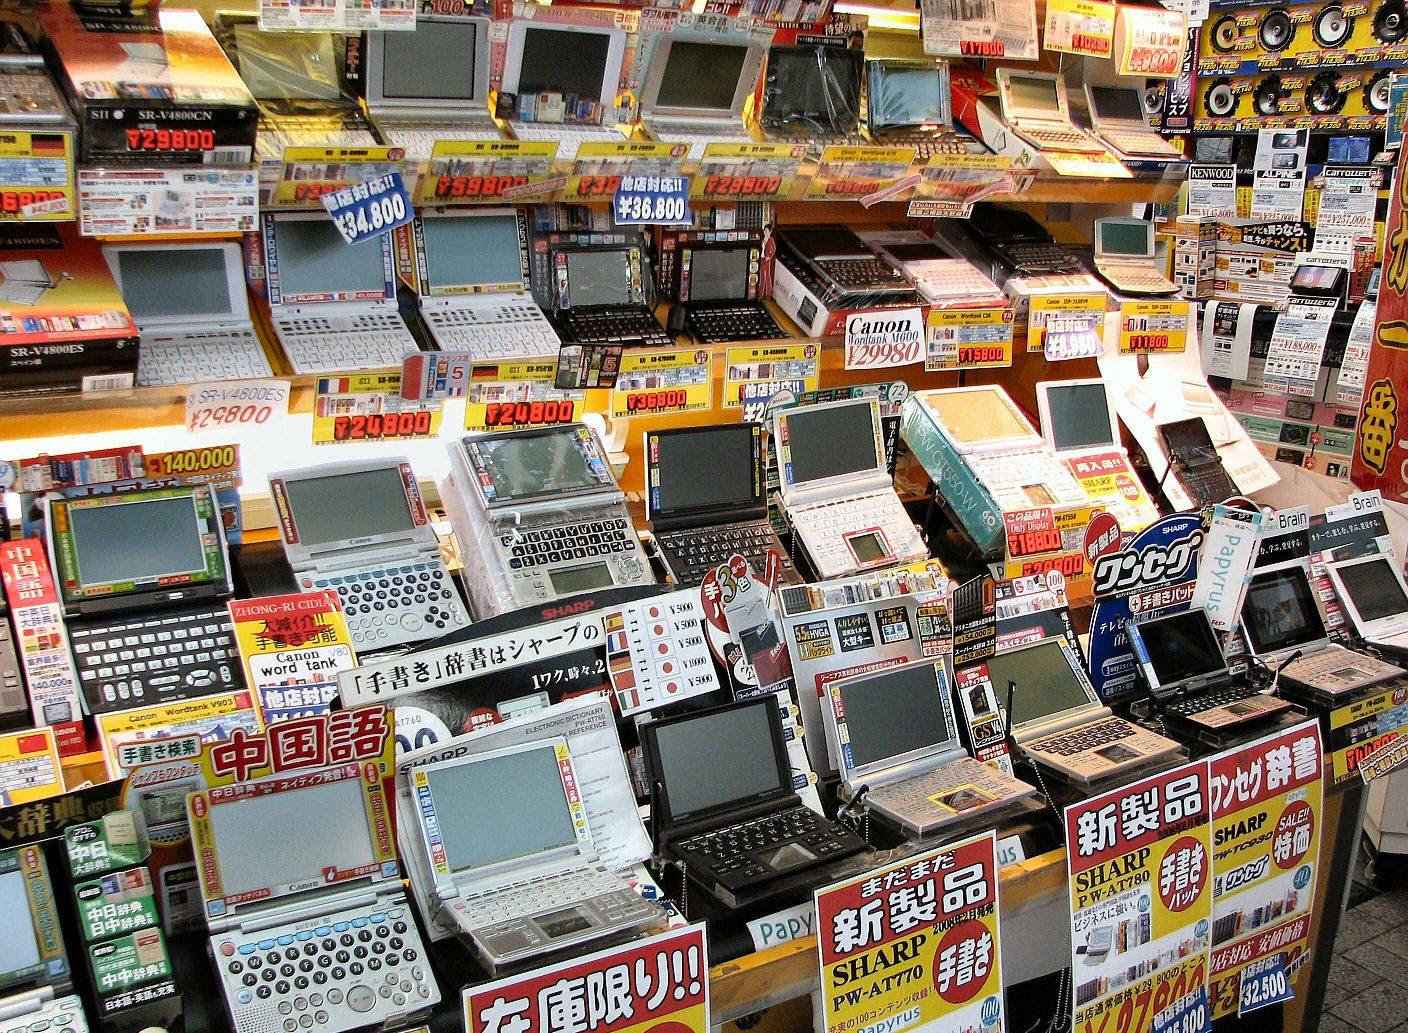 Tokyo_Akihabara_gadgets.jpg (1408×1033)